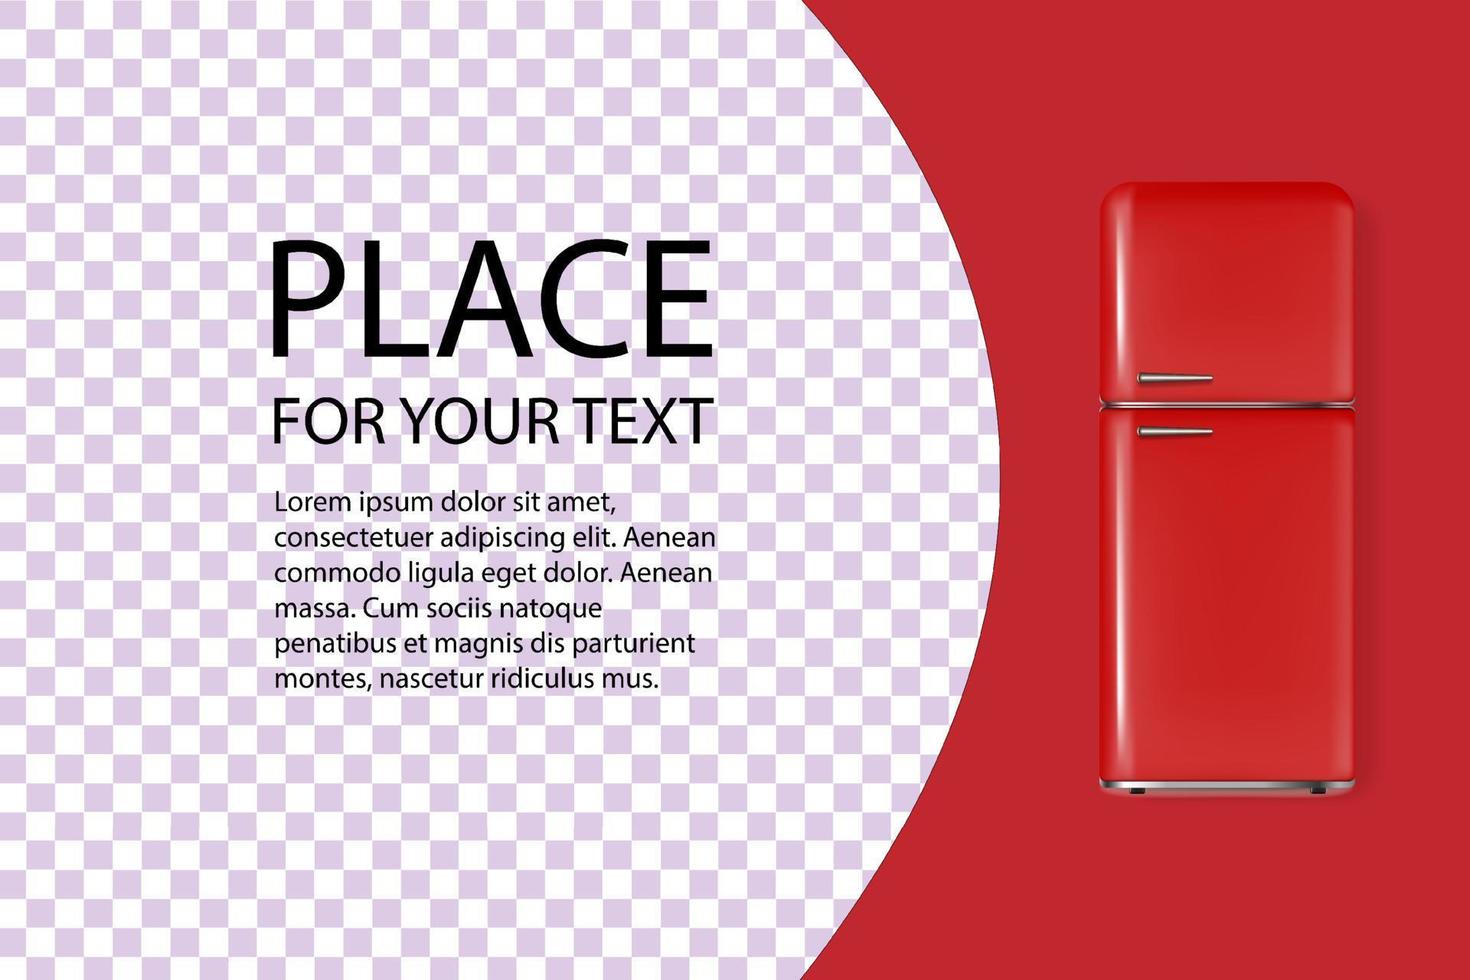 bannière de réfrigérateur vintage 3d détaillée réaliste. affiche publicitaire avec texte. illustration vectorielle d'un réfrigérateur vecteur